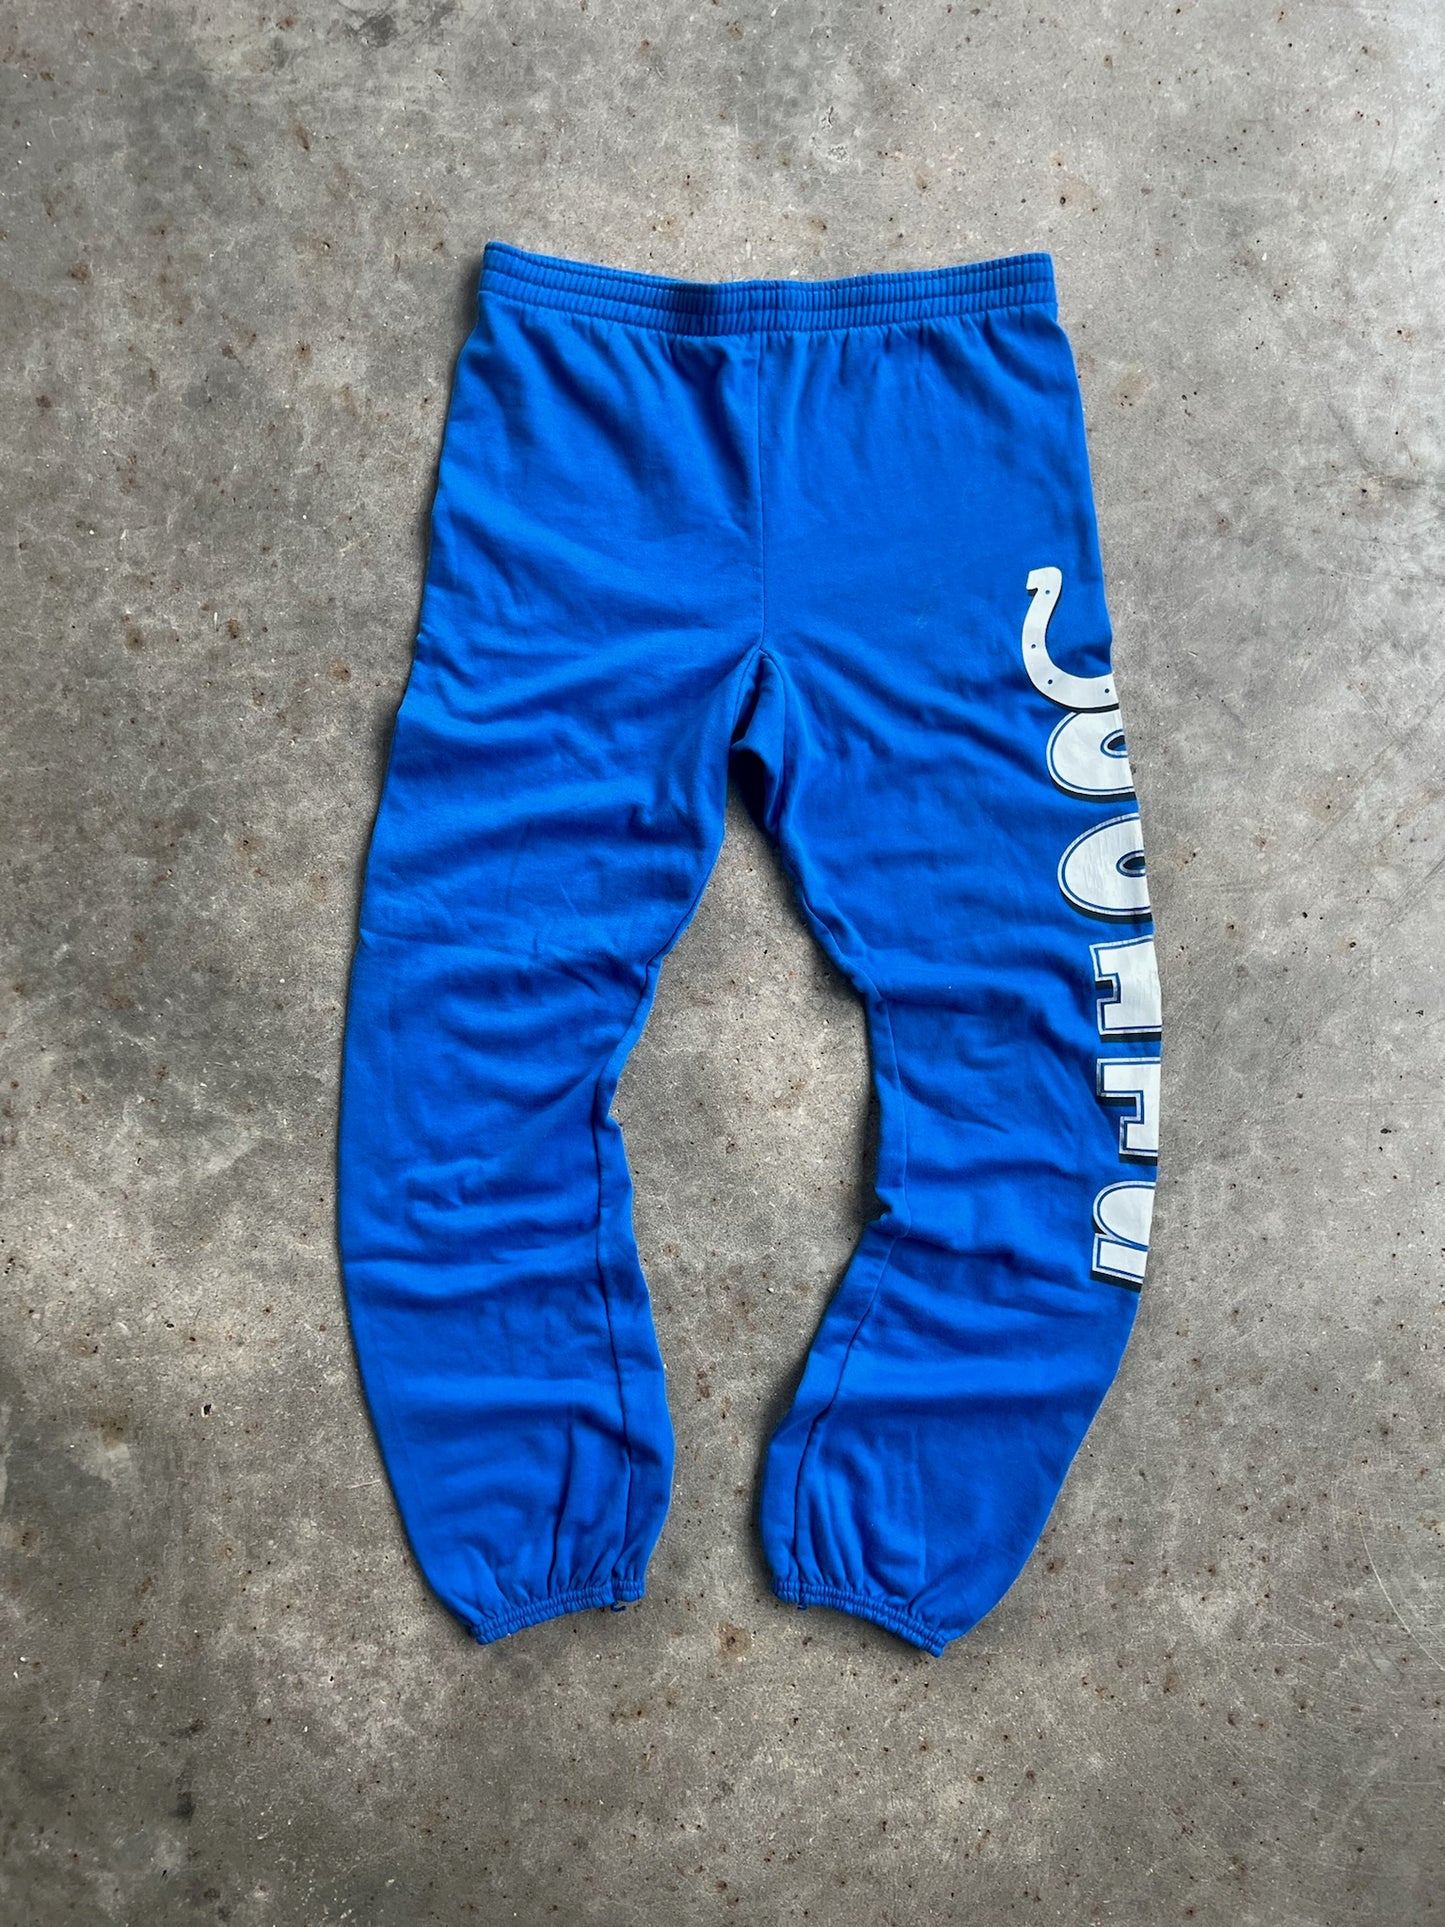 Vintage Colts Sweatpants - XL